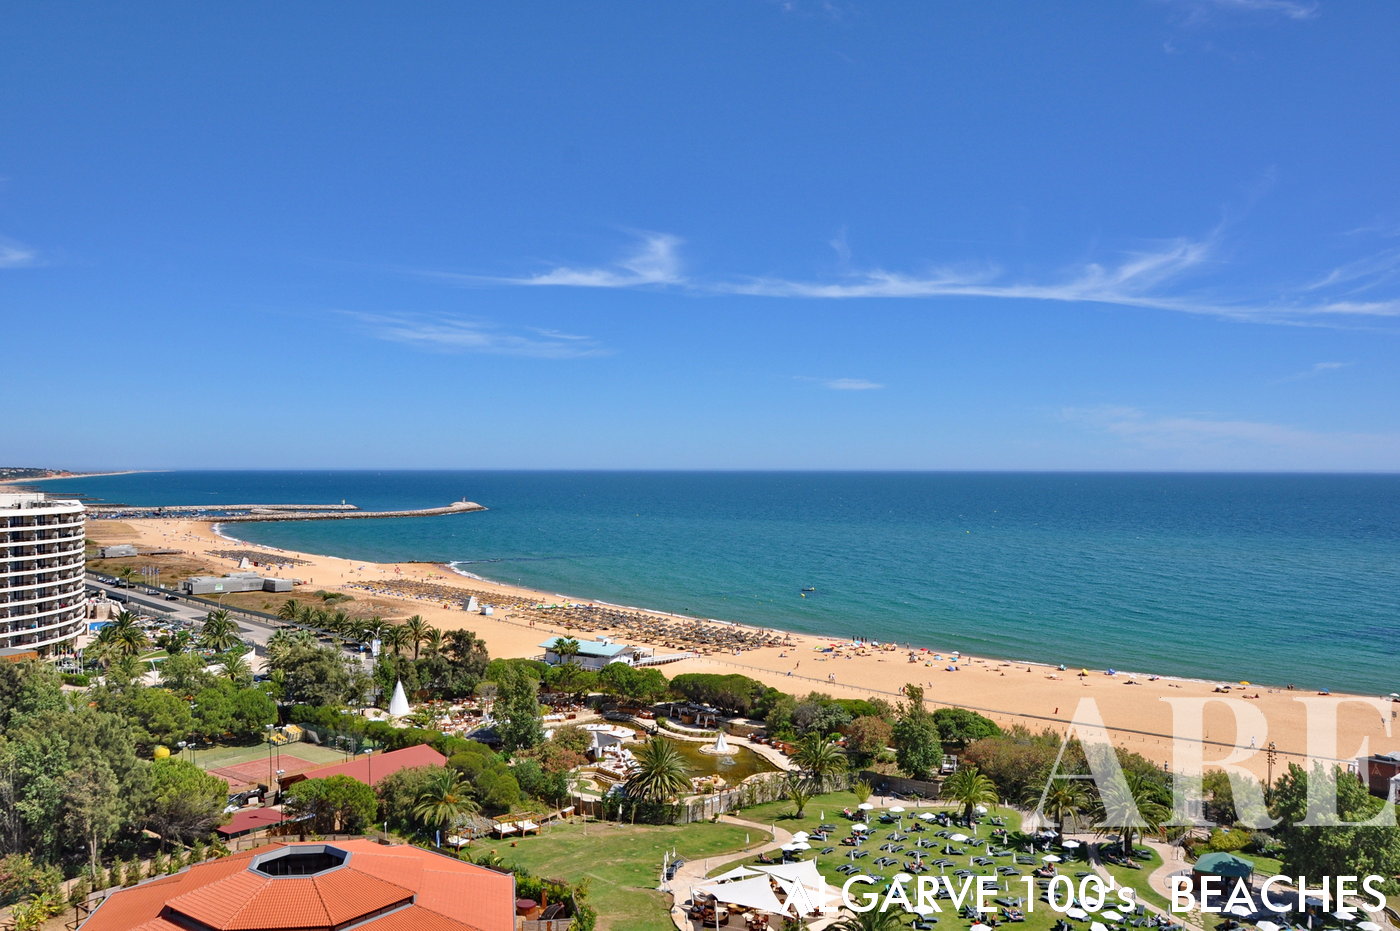 A praia e Vilamoura é muito visitada pelos hóspedes dos hotéis situados em frente à praia. Nesta fotografia podemos apreciar a vista da praia de Vilamoura desde um quarto do hotel Tivoli Marina